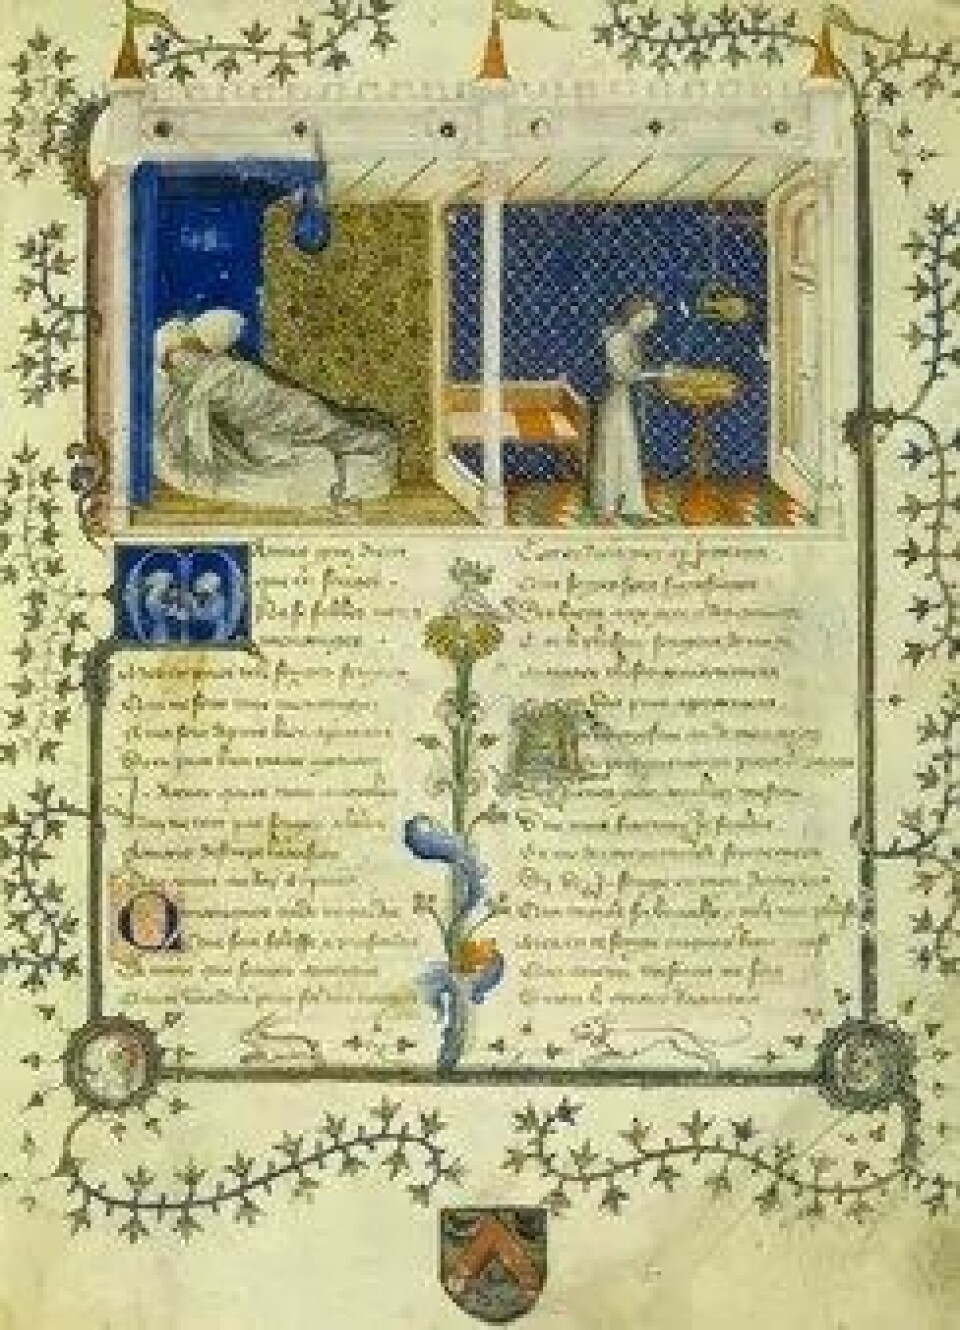 Utsnitt fra Roseromanen, her i en versjon fra 1390. (Kilde: Wikimedia commons)